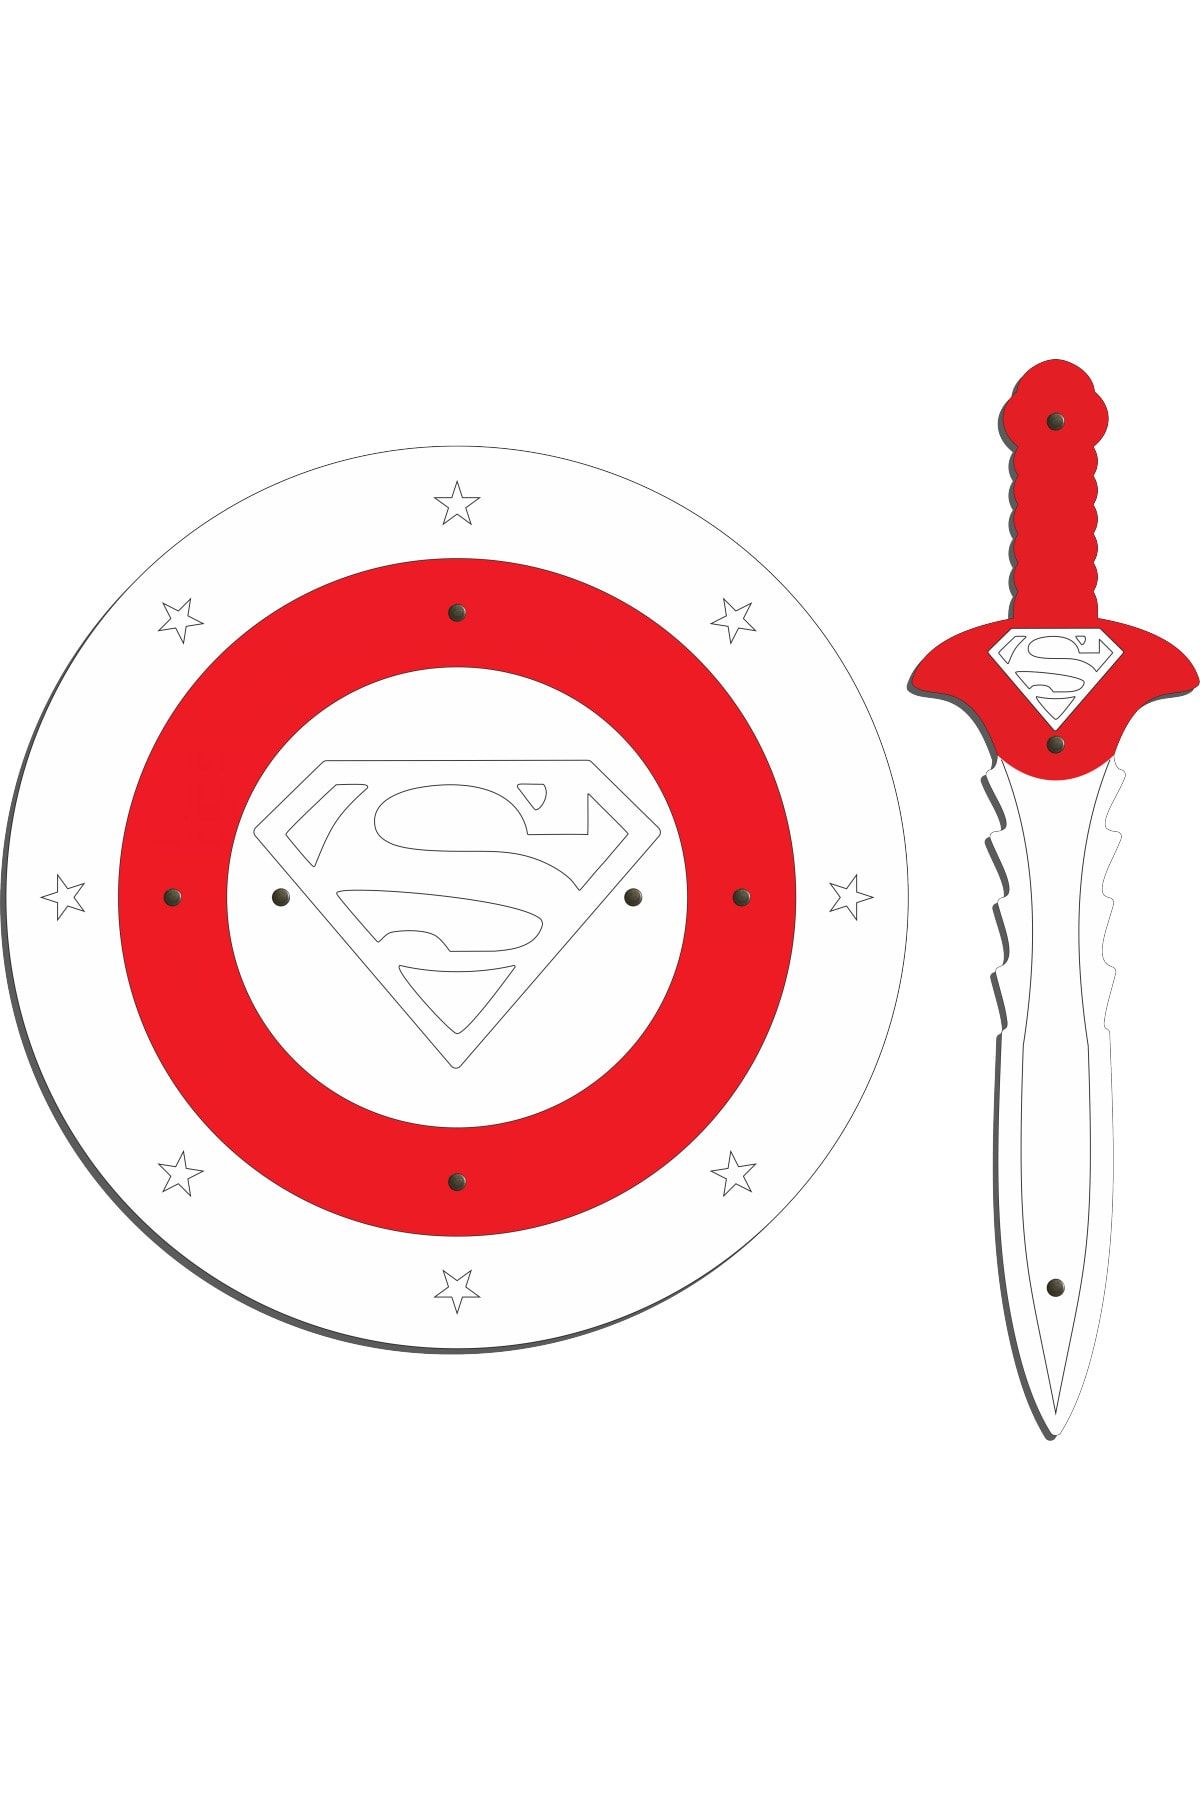 Ahtek Ahşap Oyuncak Seti 2’li, Süperman Figürlü Kalkan Ve Kılıç